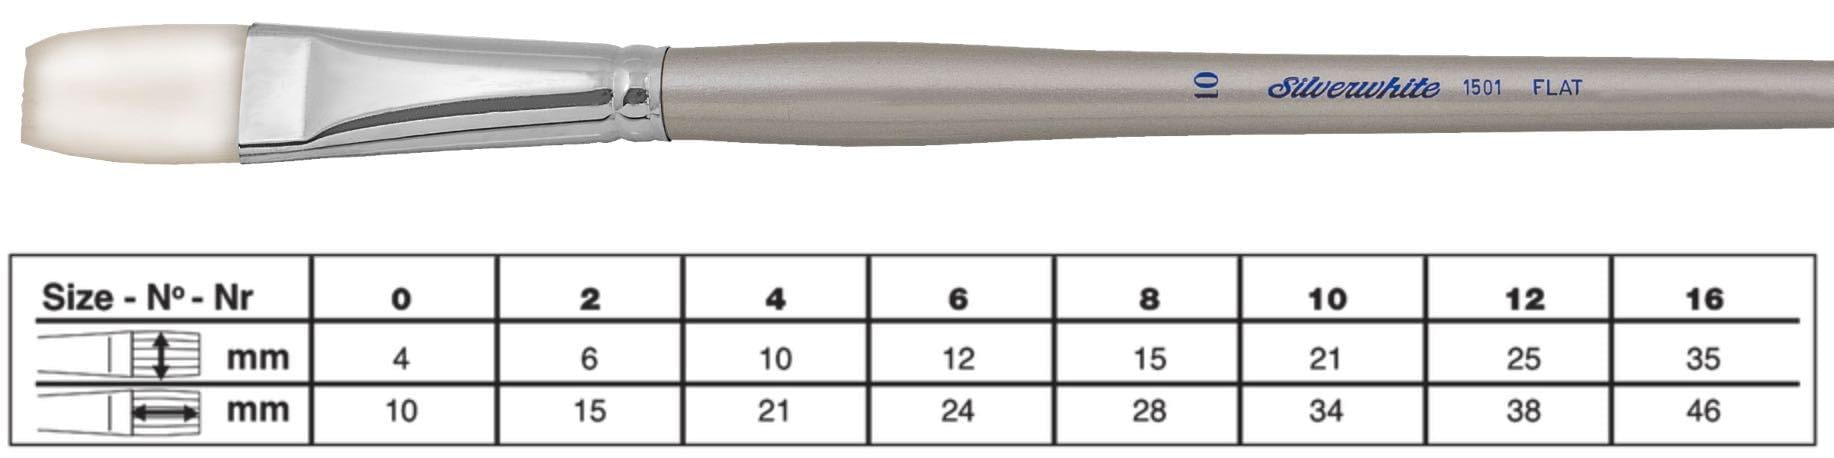 SILVER BRUSH SILVER BRUSH 6 (12mm x 24mm) Silver Brush 1501 Silverwhite Long Handle